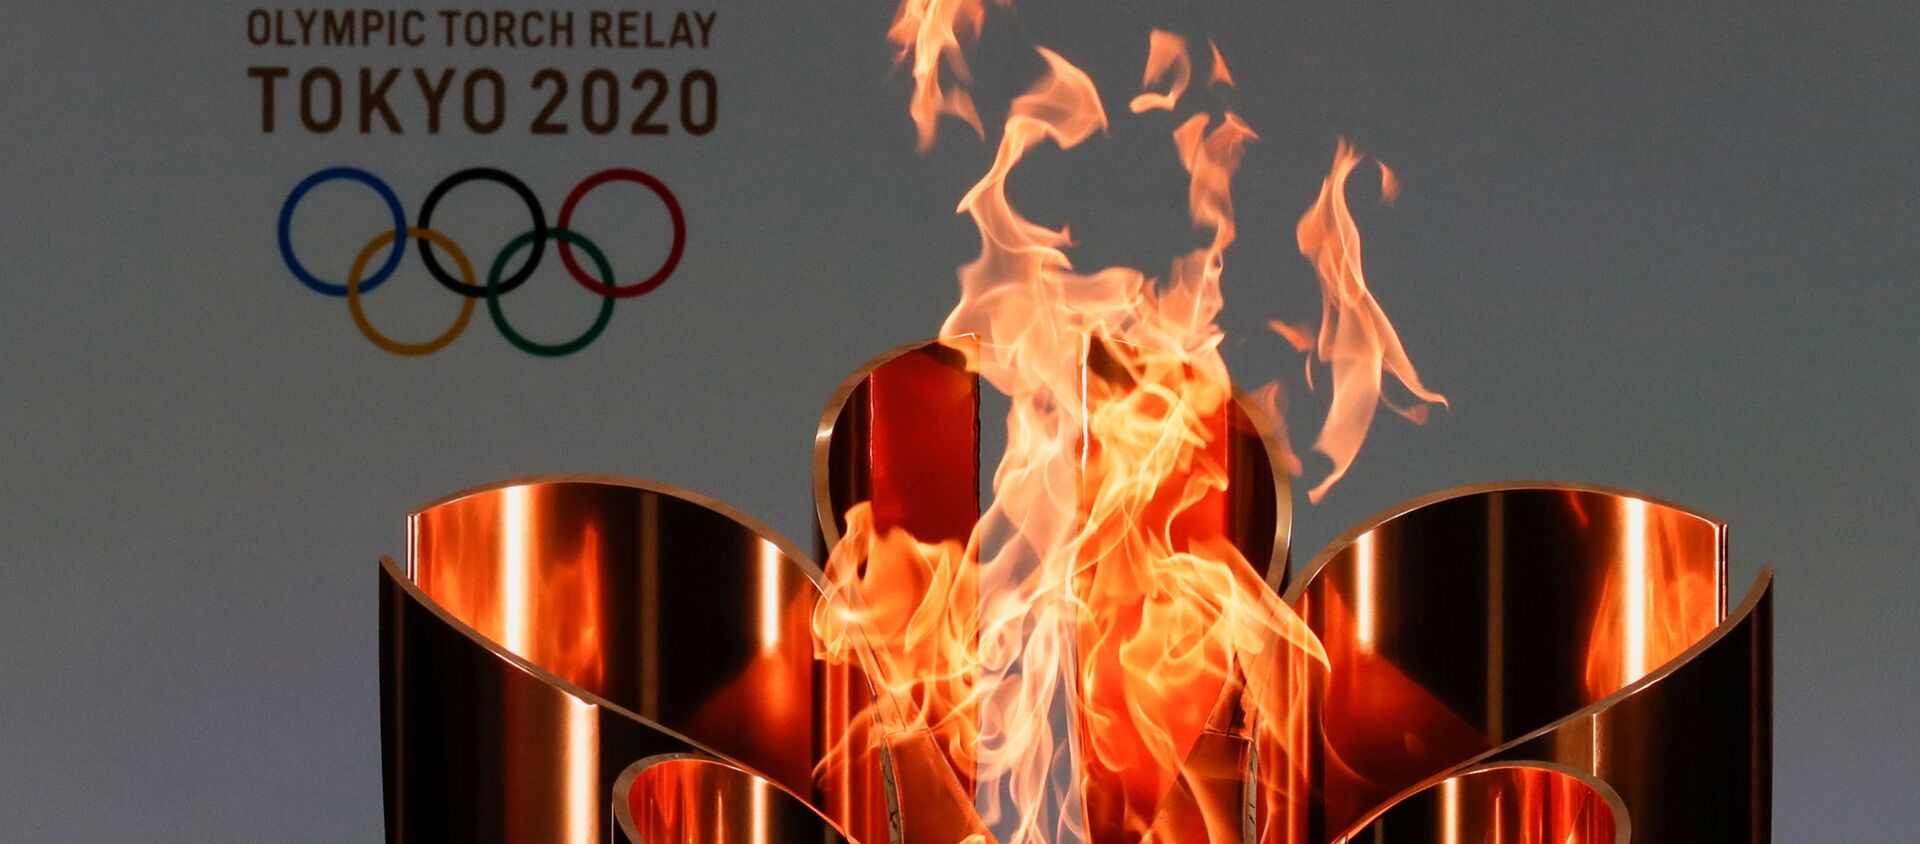 Ngọn lửa olympic của Thế vận hội Olympic ở Tokyo-2020. - Sputnik Việt Nam, 1920, 07.04.2021